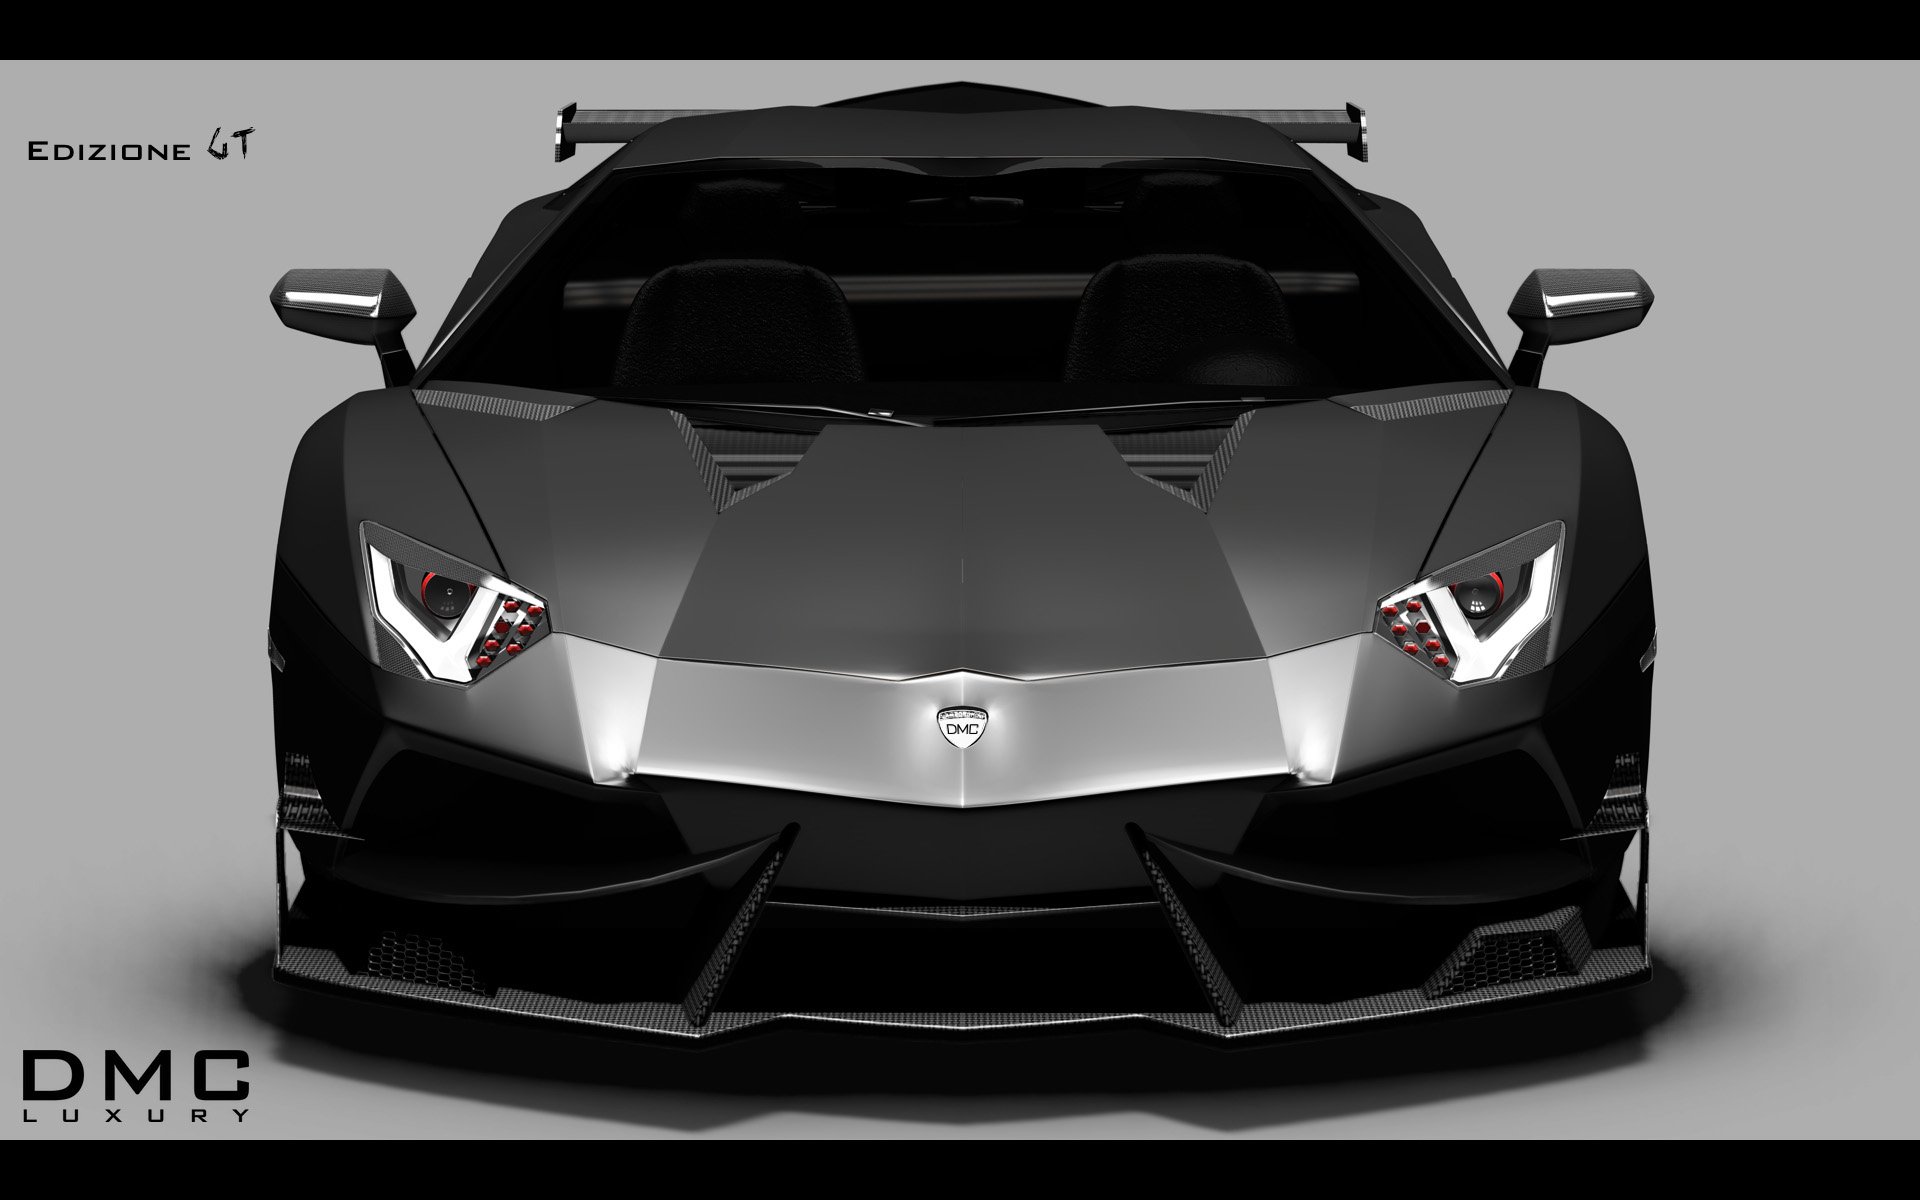 2014, Dmc, Lamborghini, Aventador, Lp988, Edizione, G t, Supercar, Te Wallpaper